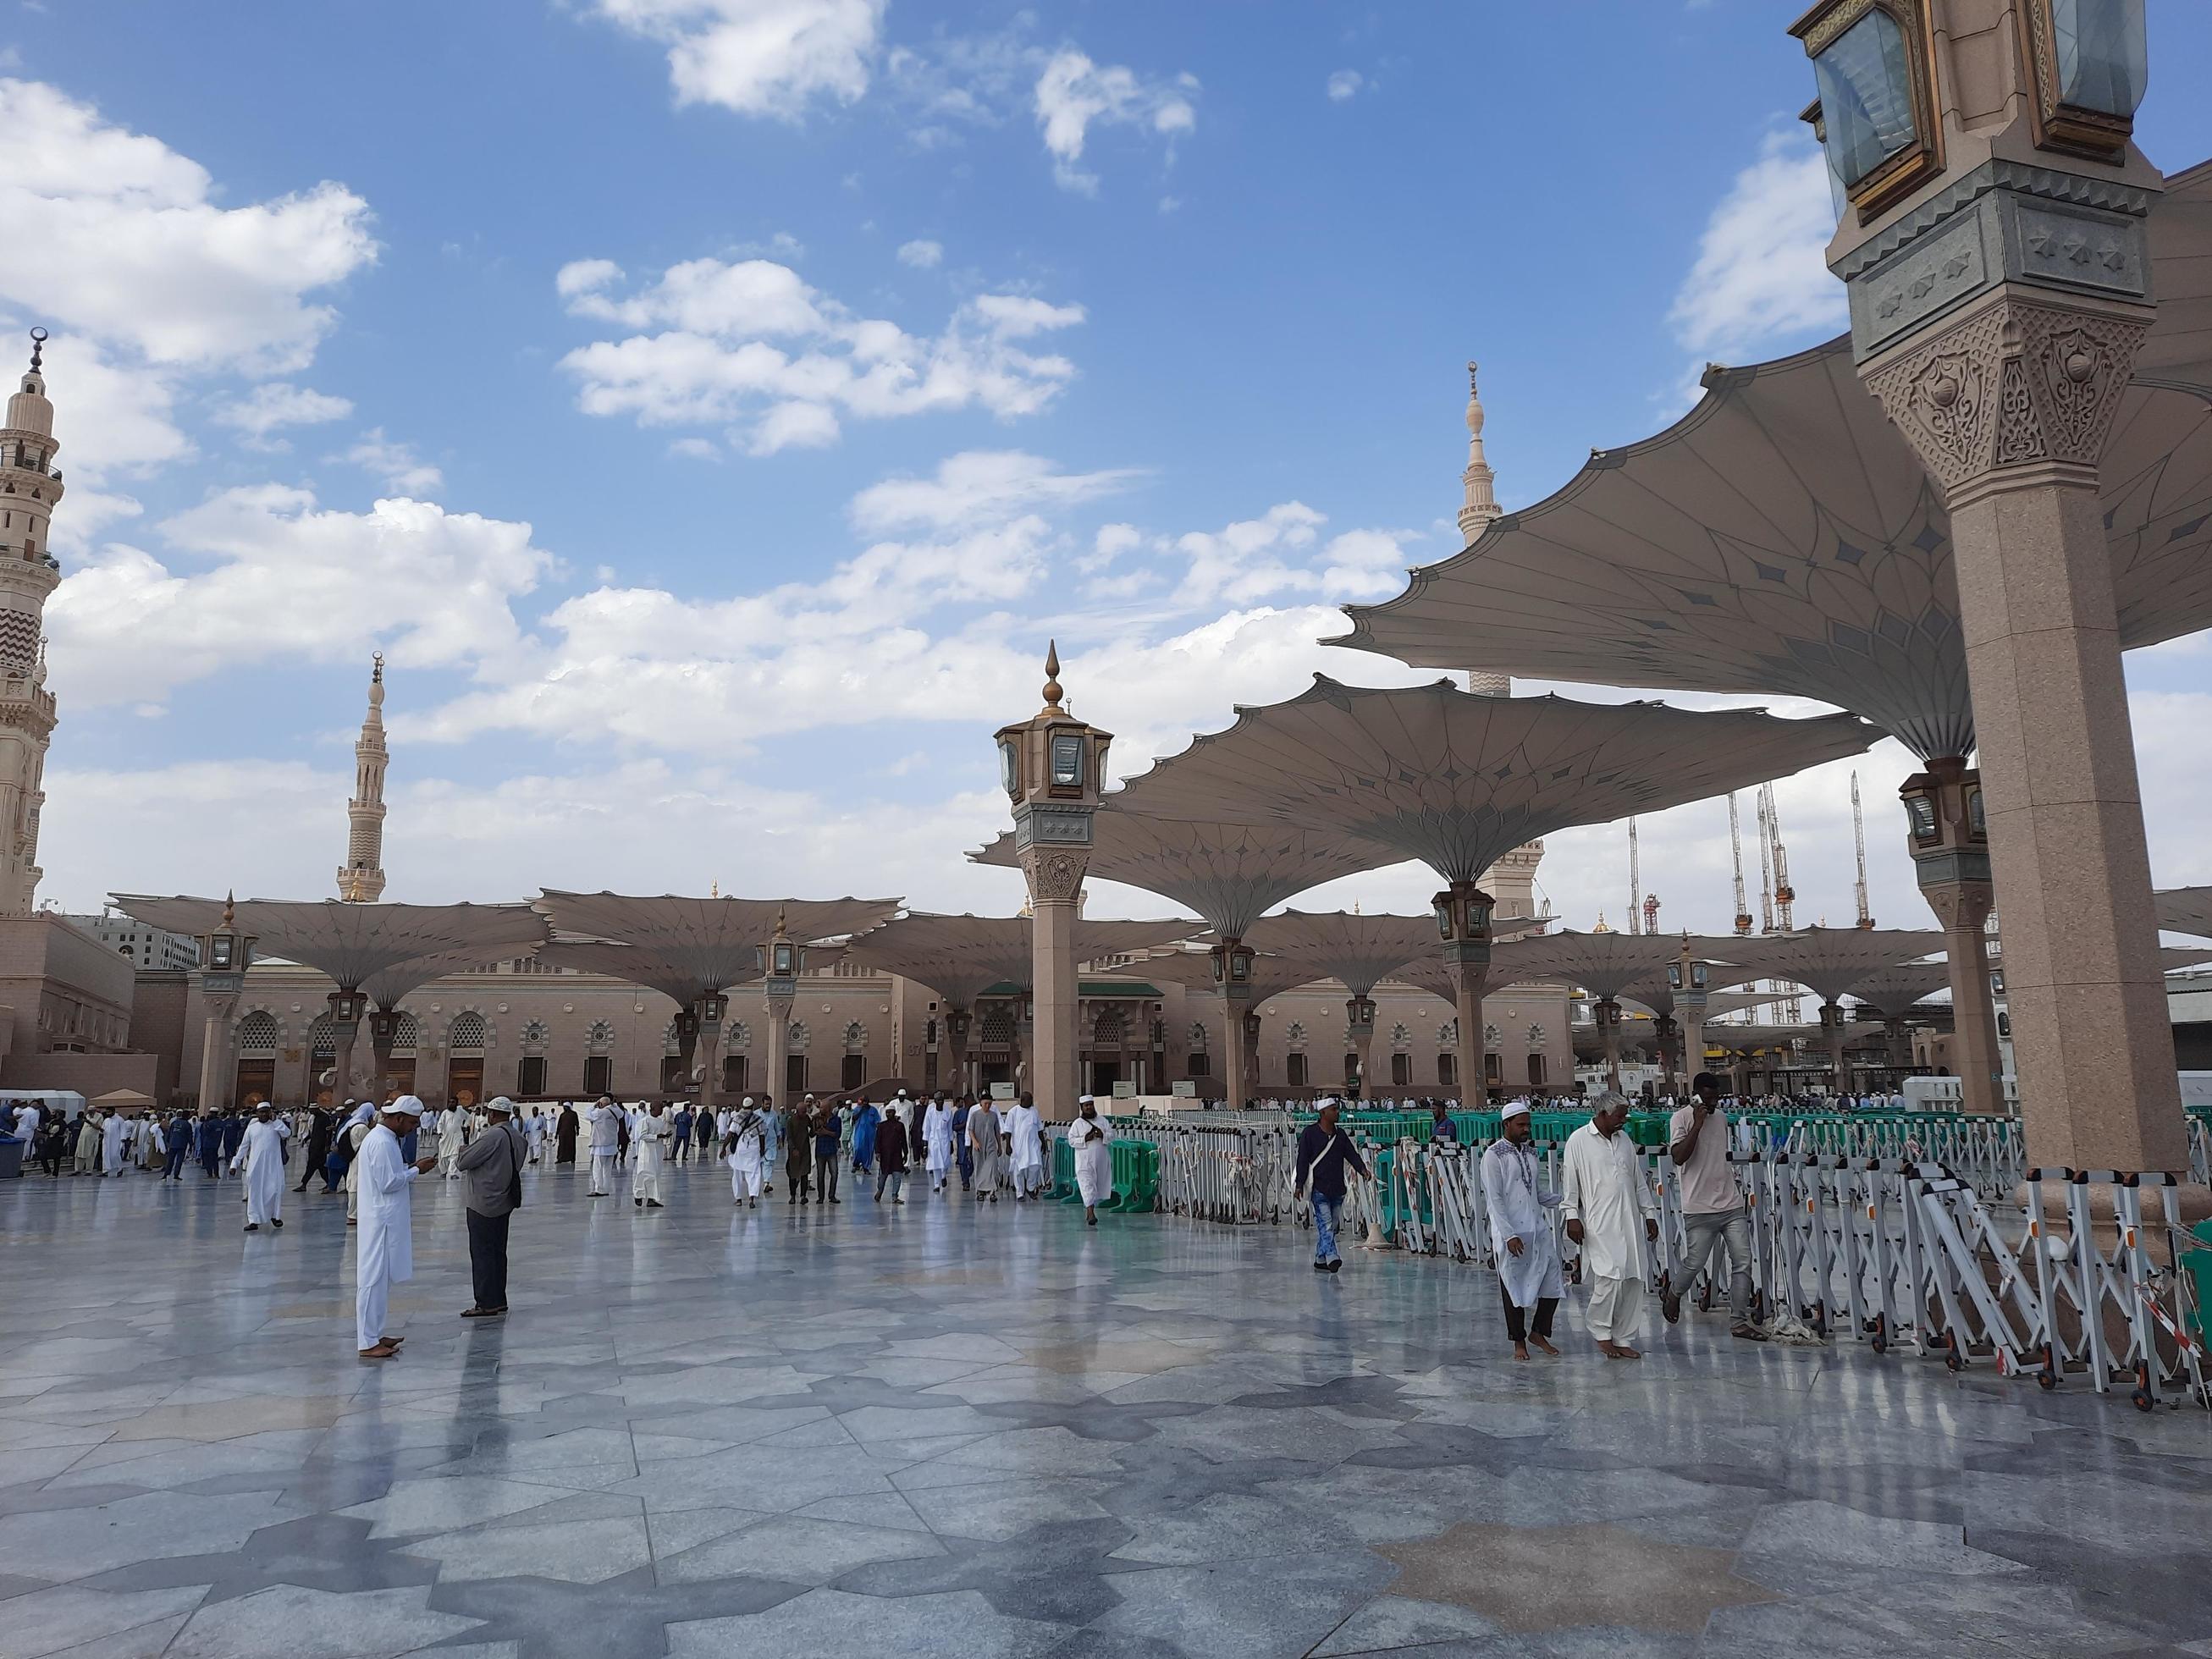 medina, saudi arabia, mayo 2023 - un hermosa tiempo de día ver de masjid  Alabama nabaui, medina exterior patio, peregrinos y mezquita marquesinas  25288314 Foto de stock en Vecteezy